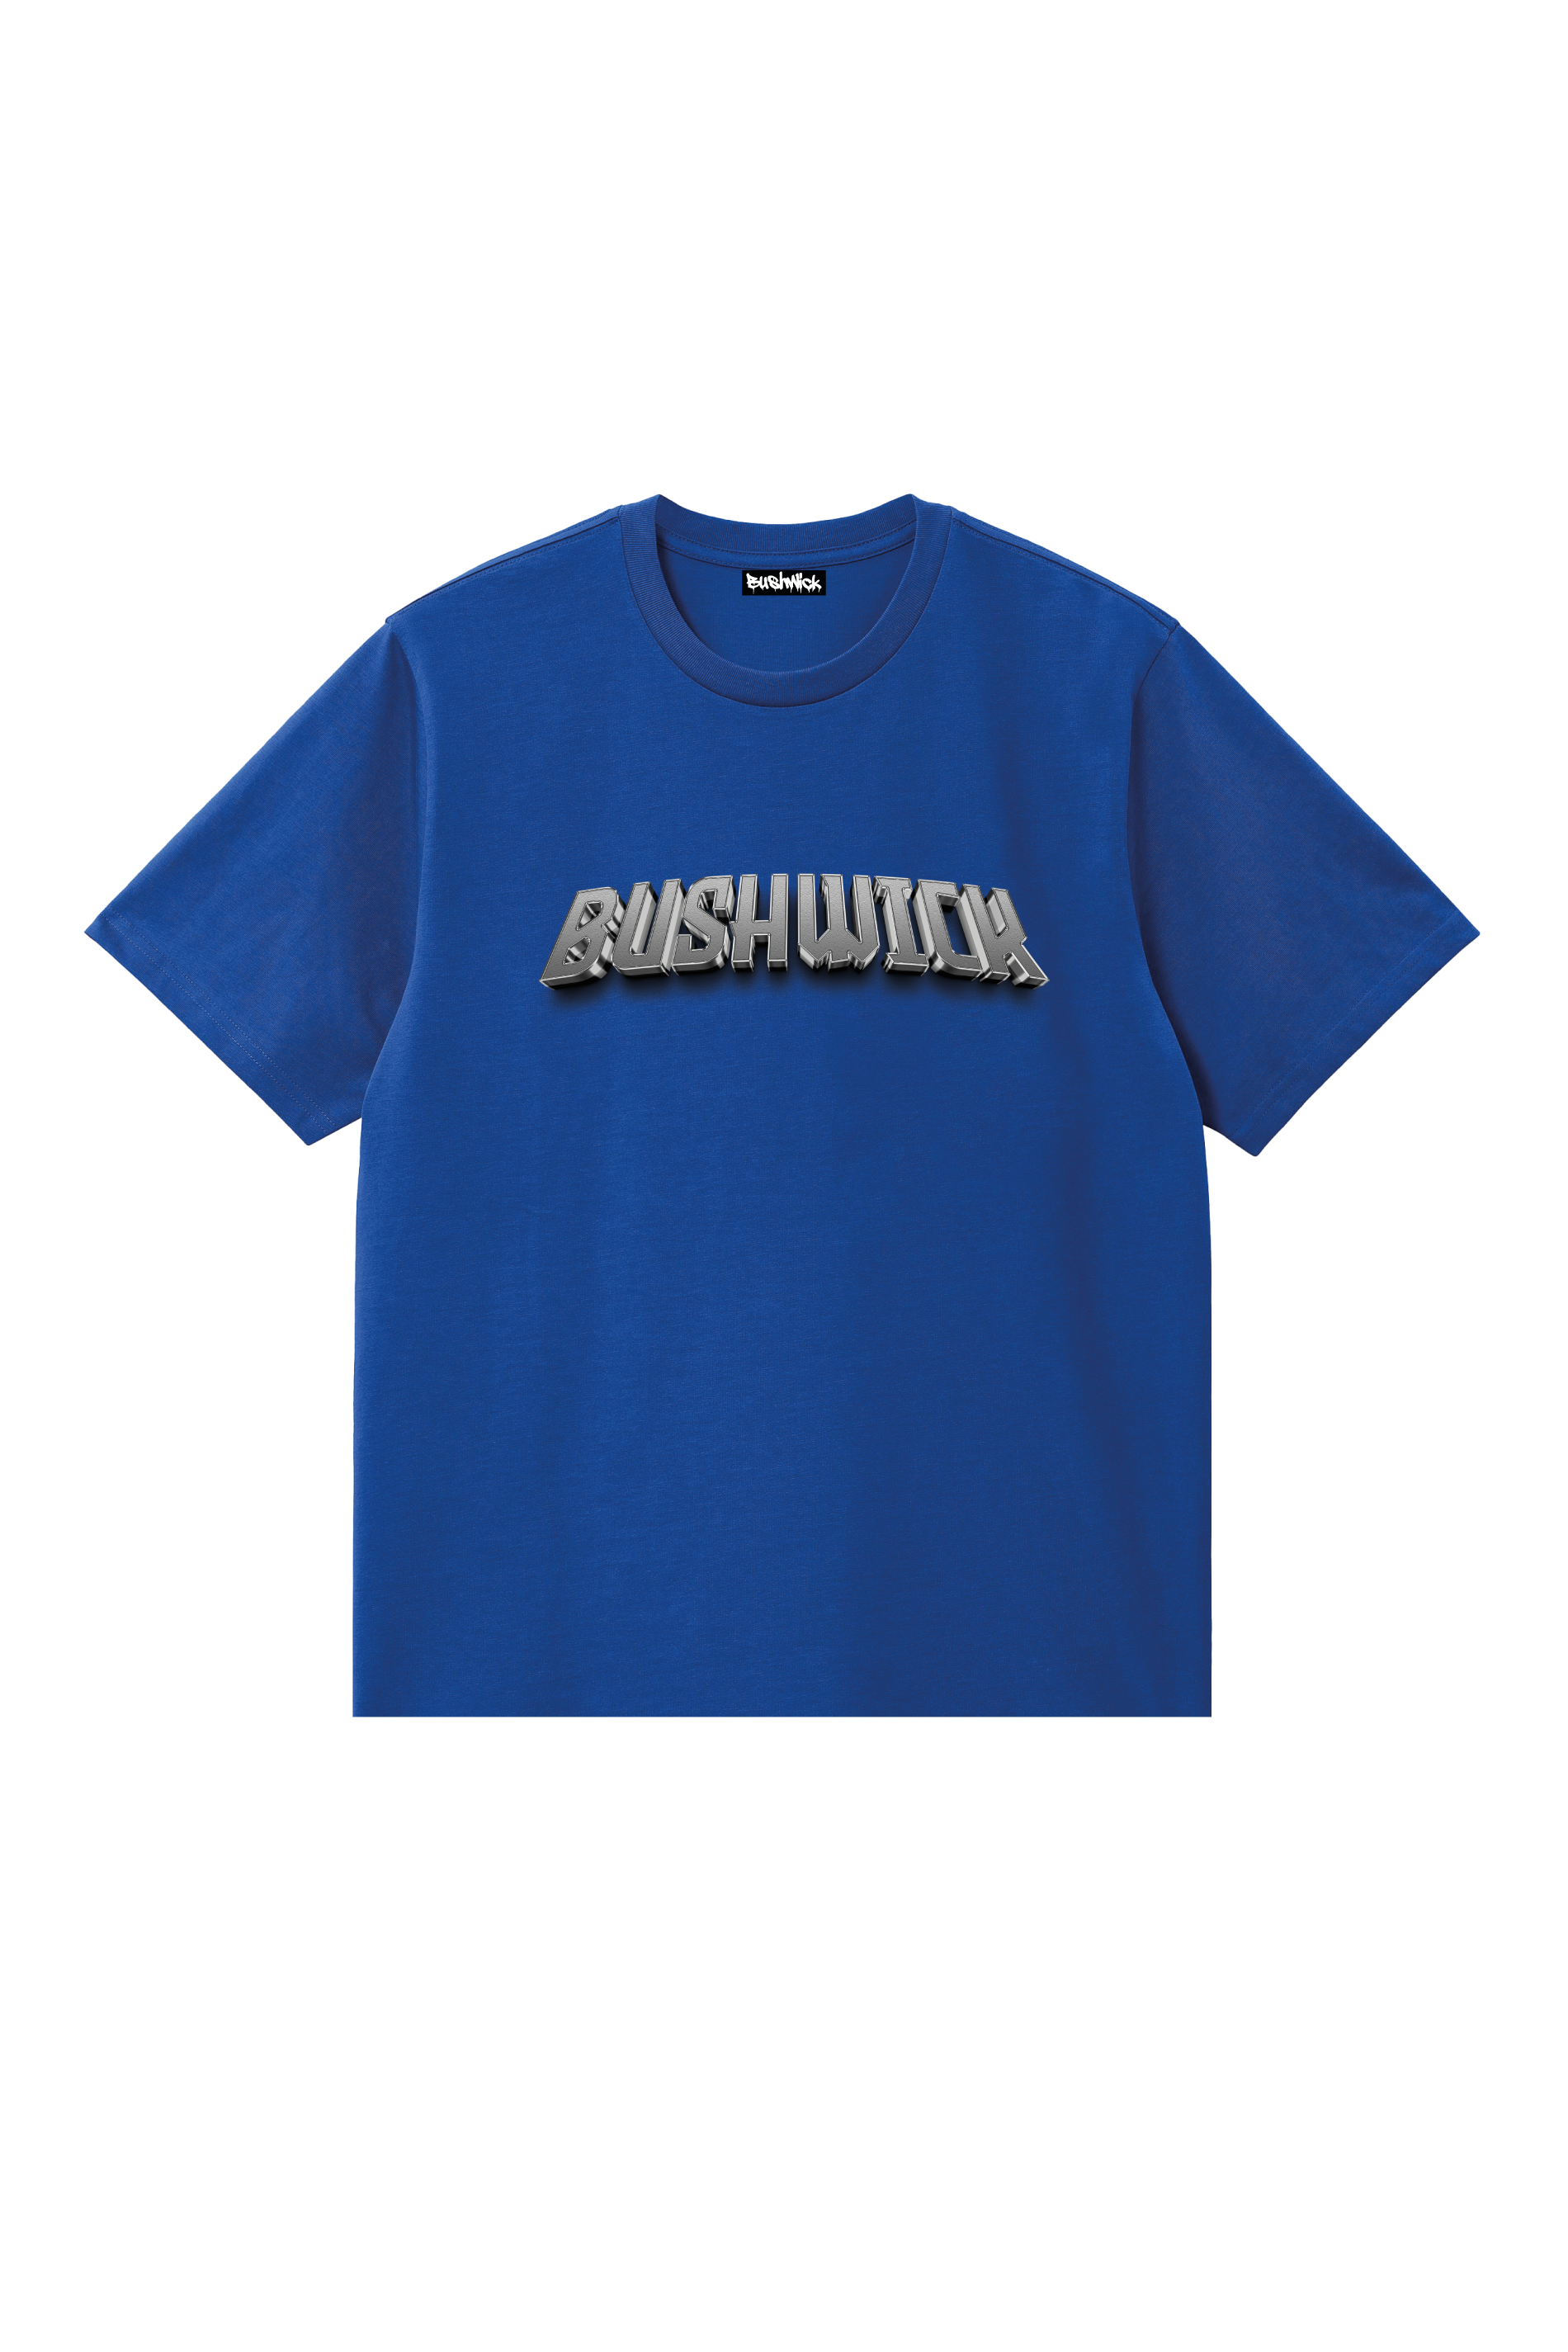 Bushwick T-Shirt uomo Iron